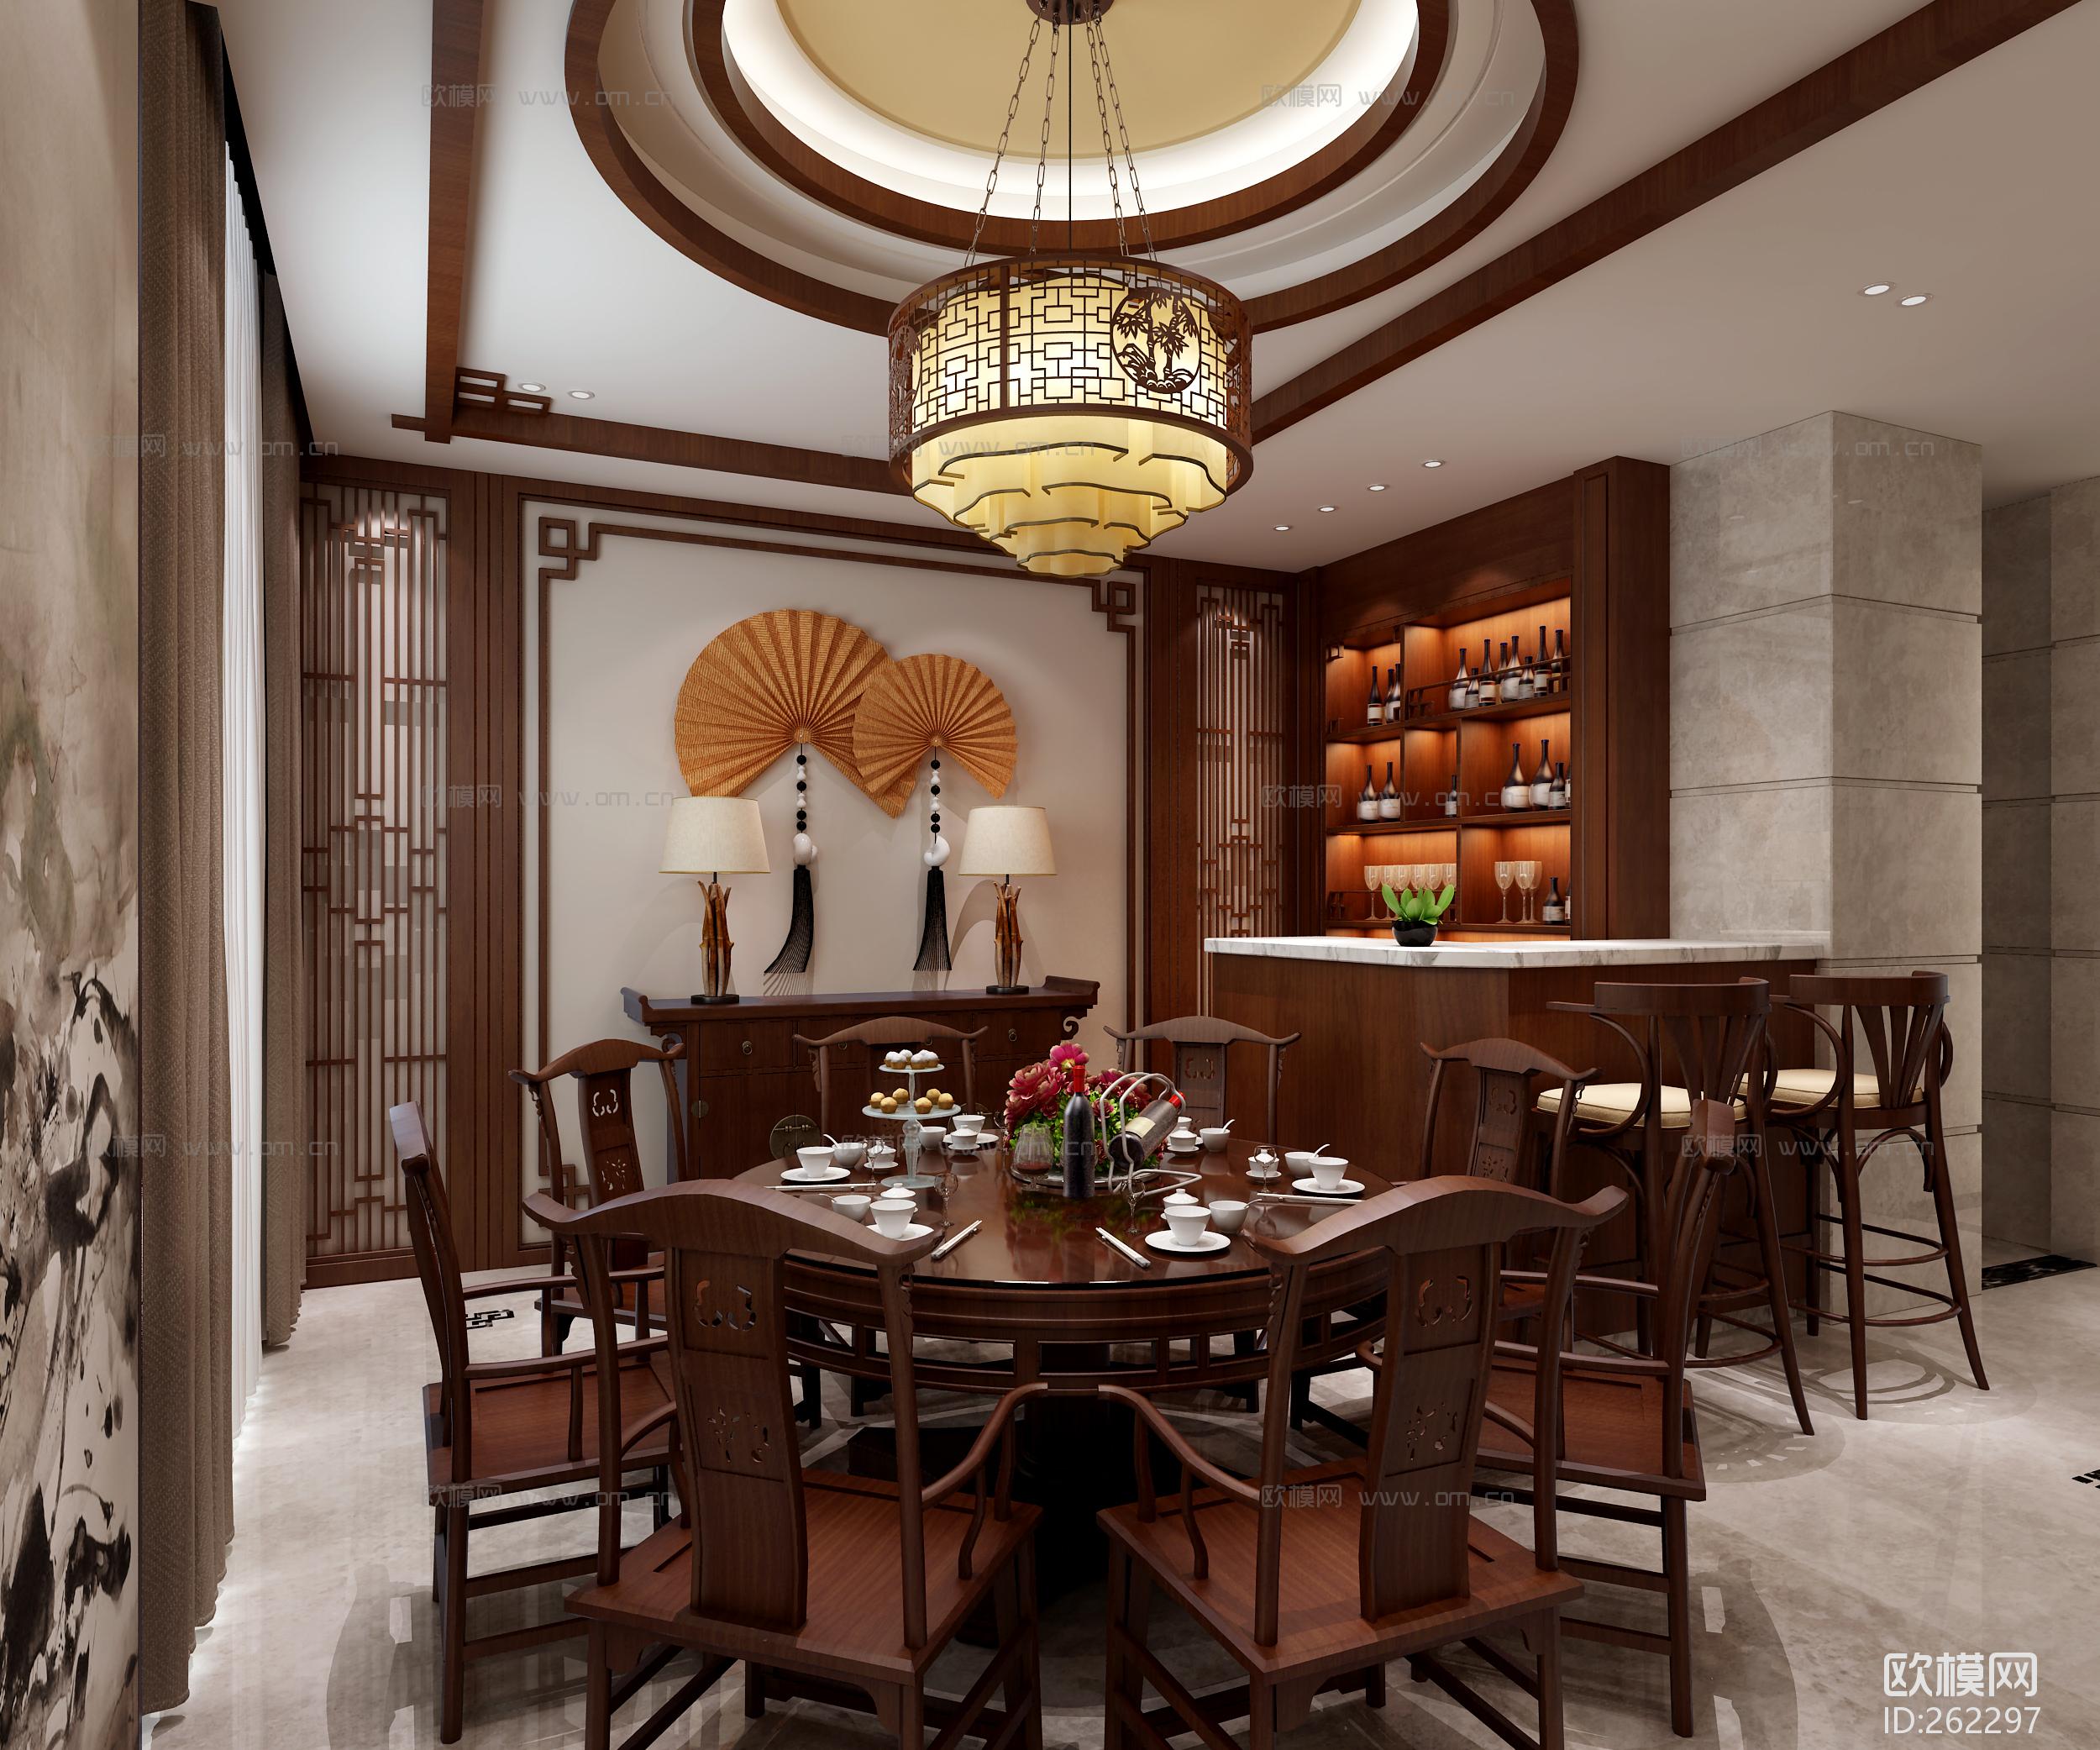 中式主题餐厅吧台装修效果图 – 设计本装修效果图